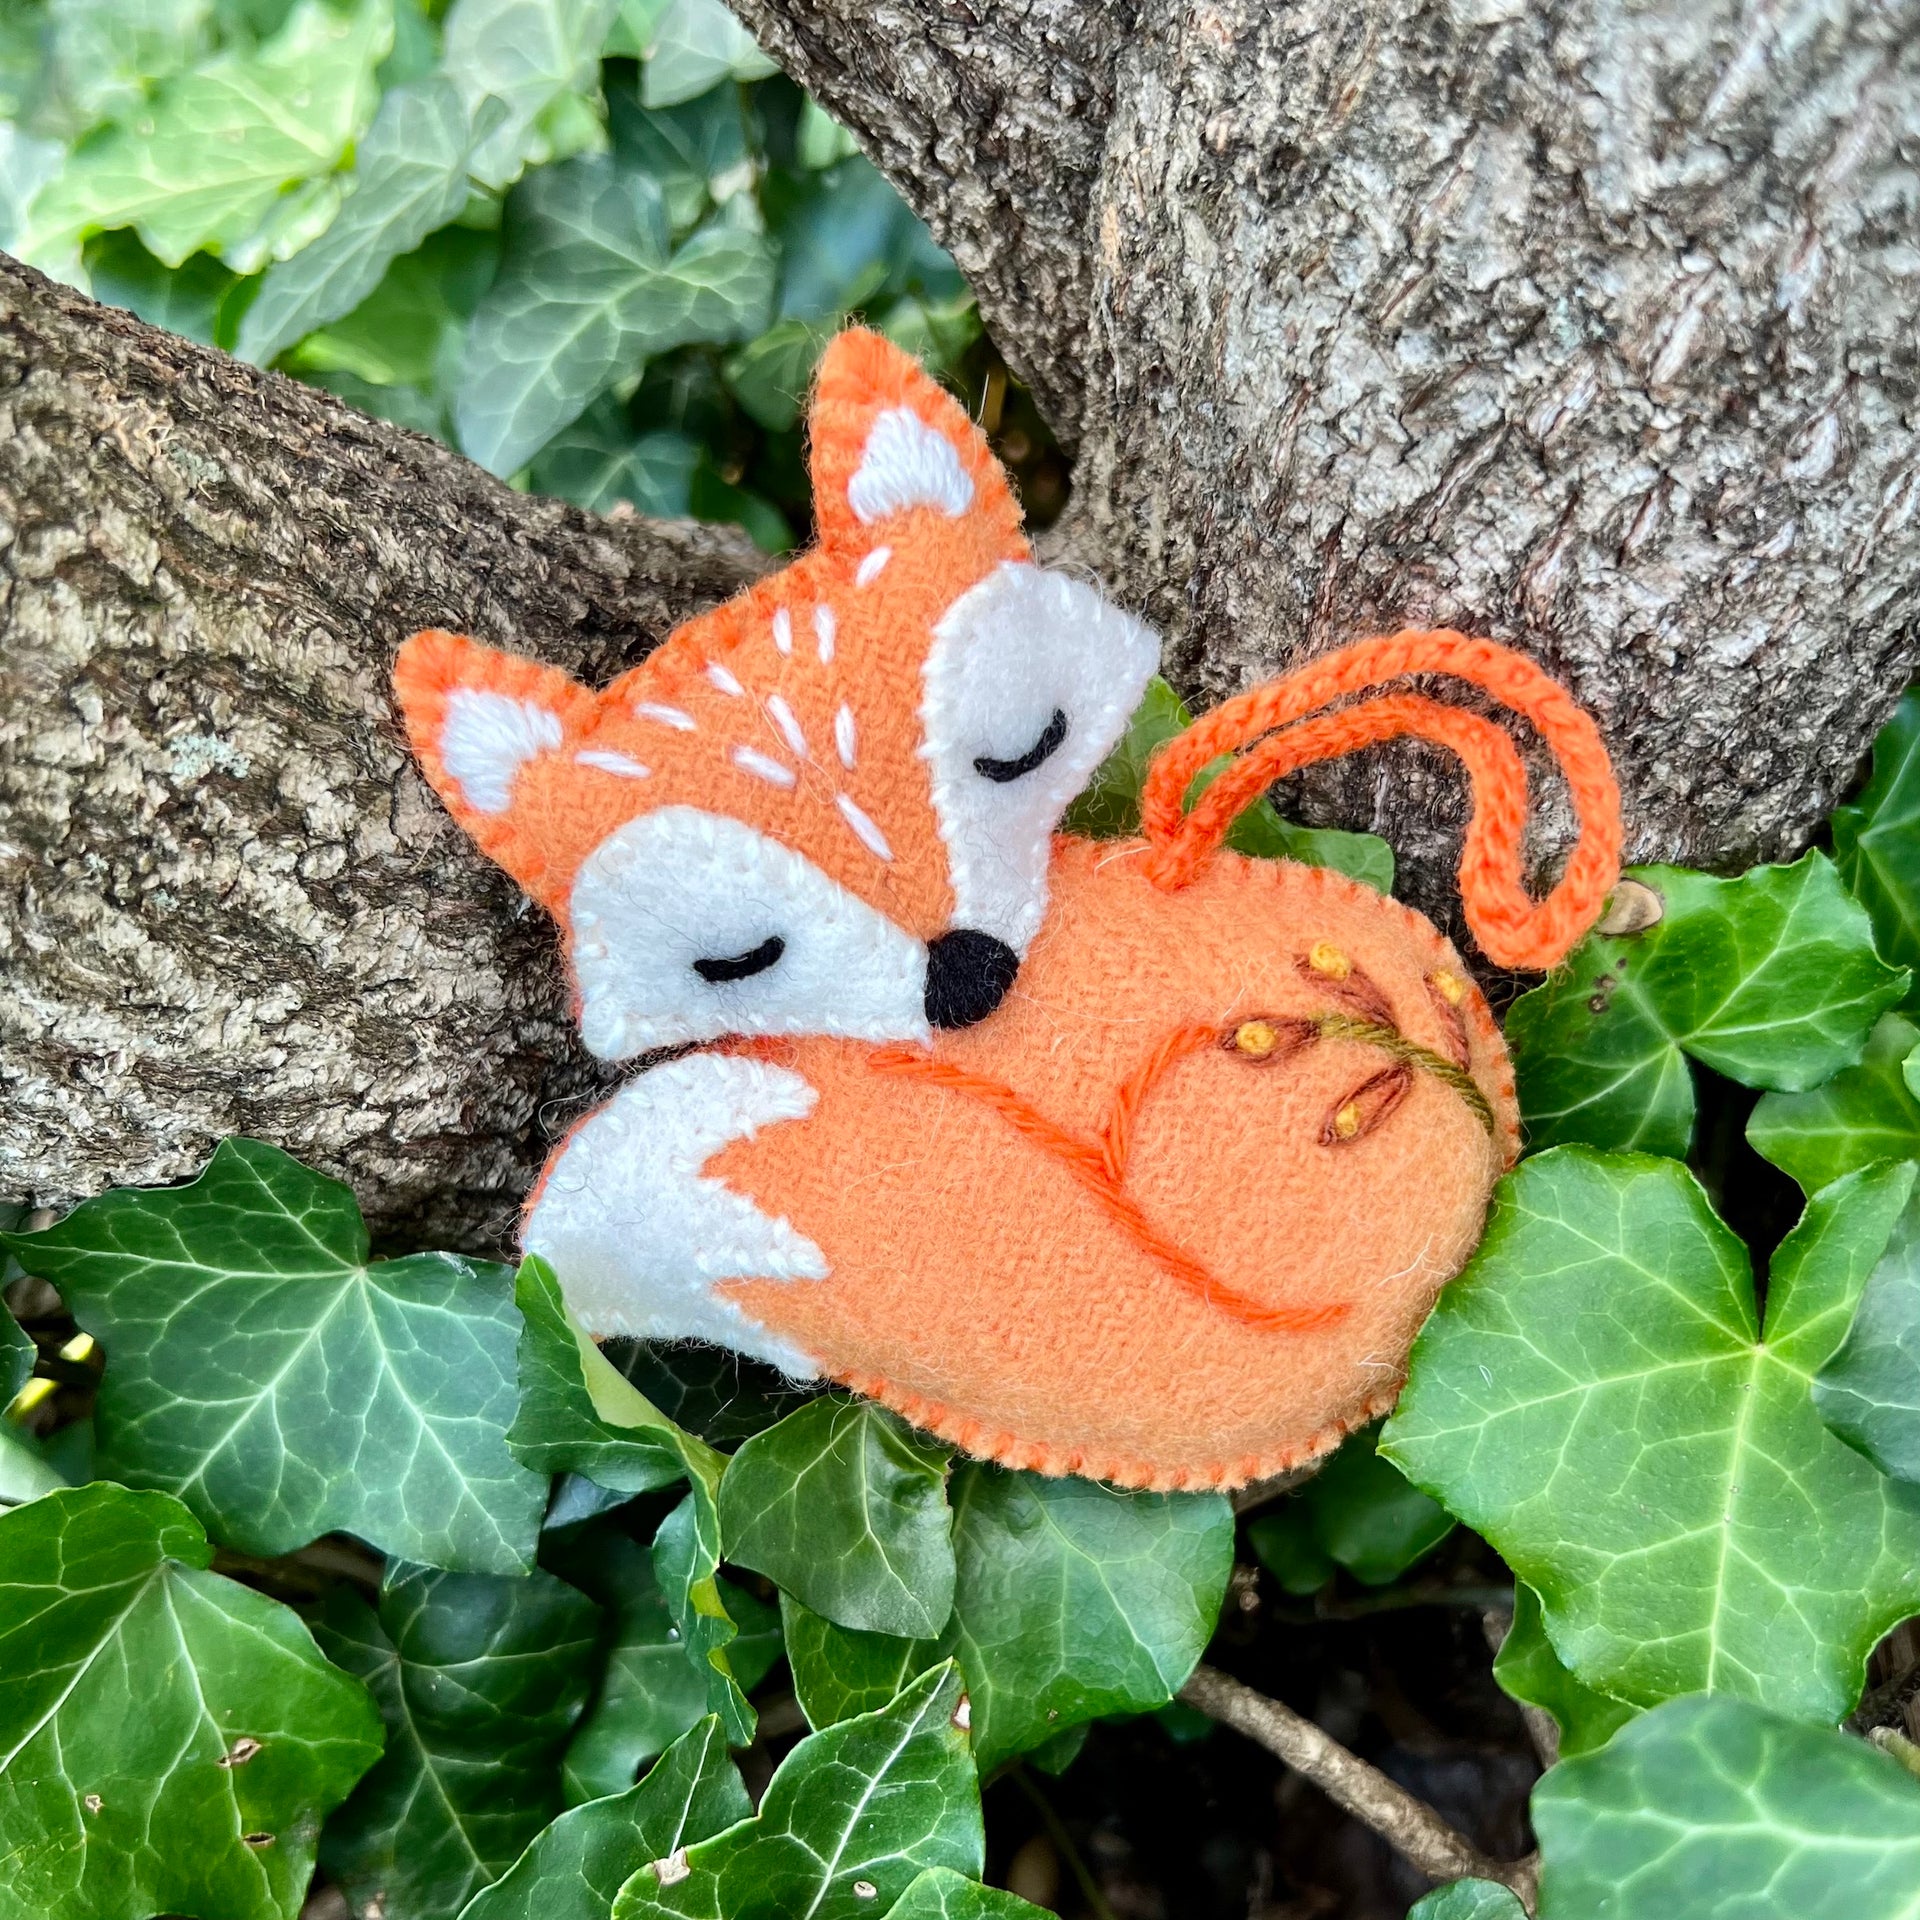 Fox Ornament Sleeping Outside in Woods